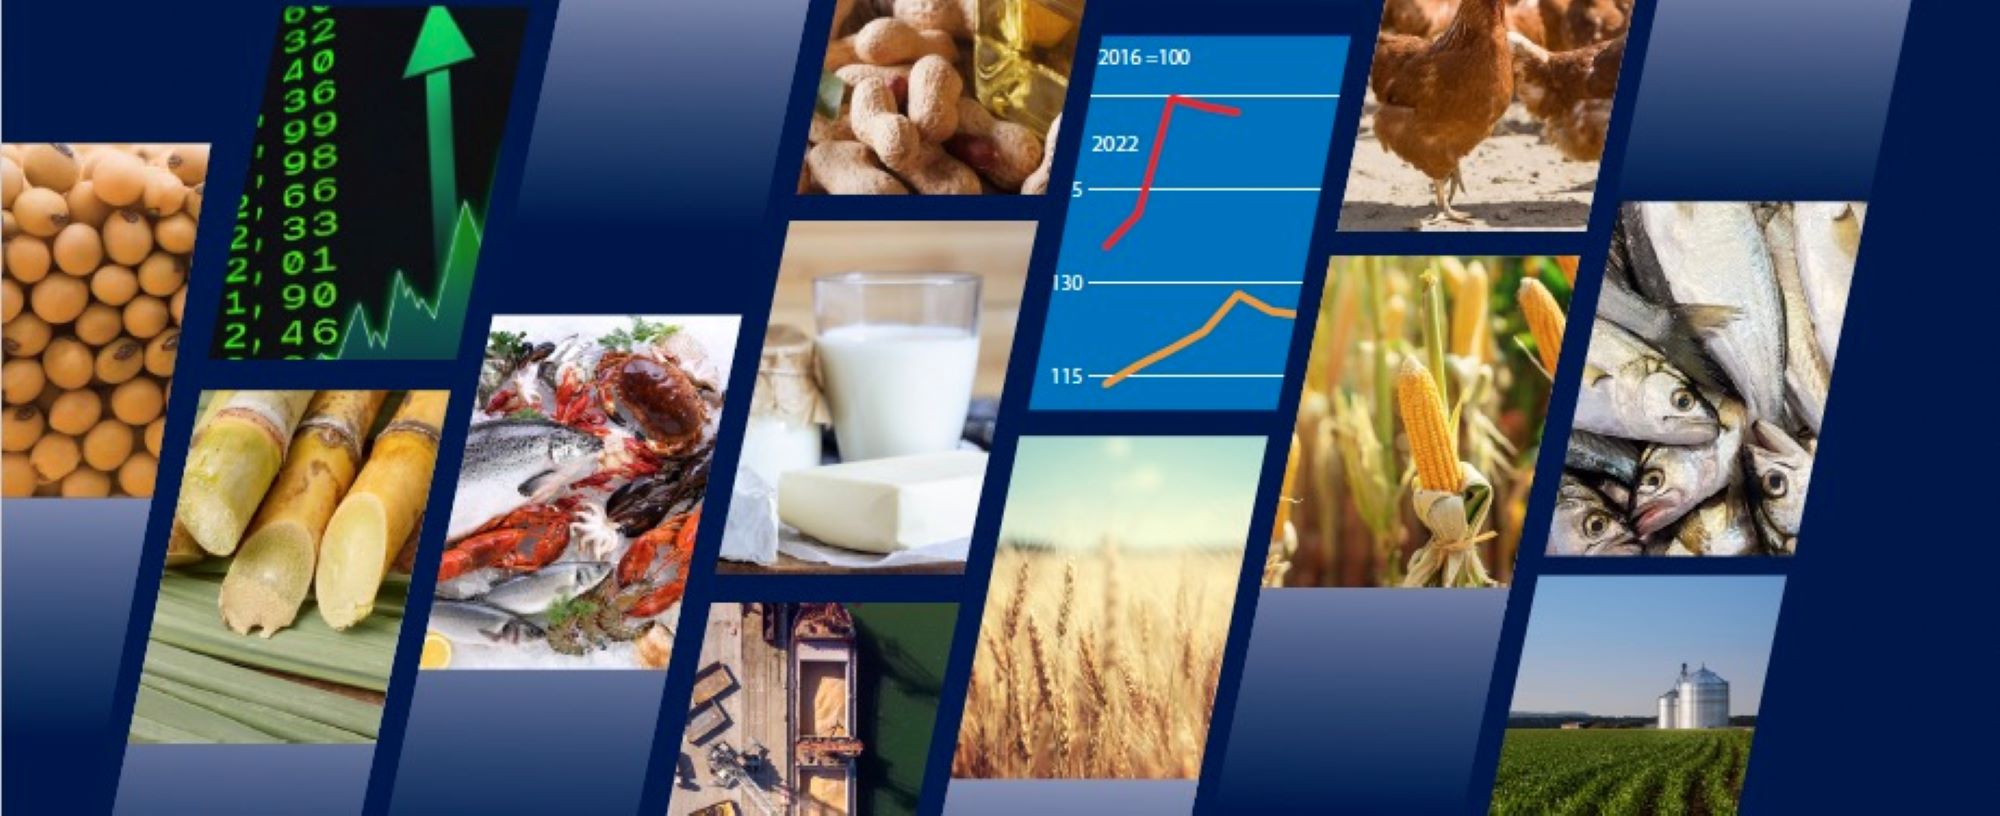 تقرير "دراسة استشرافية للأغذية" لمنظمة الأغذية والزرعة: الإنتاج العالمي آخذ  في التوسع، ولكن انخفاض واردات البلدان الأكثر ضعفًا مسألة مثيرة للقلق